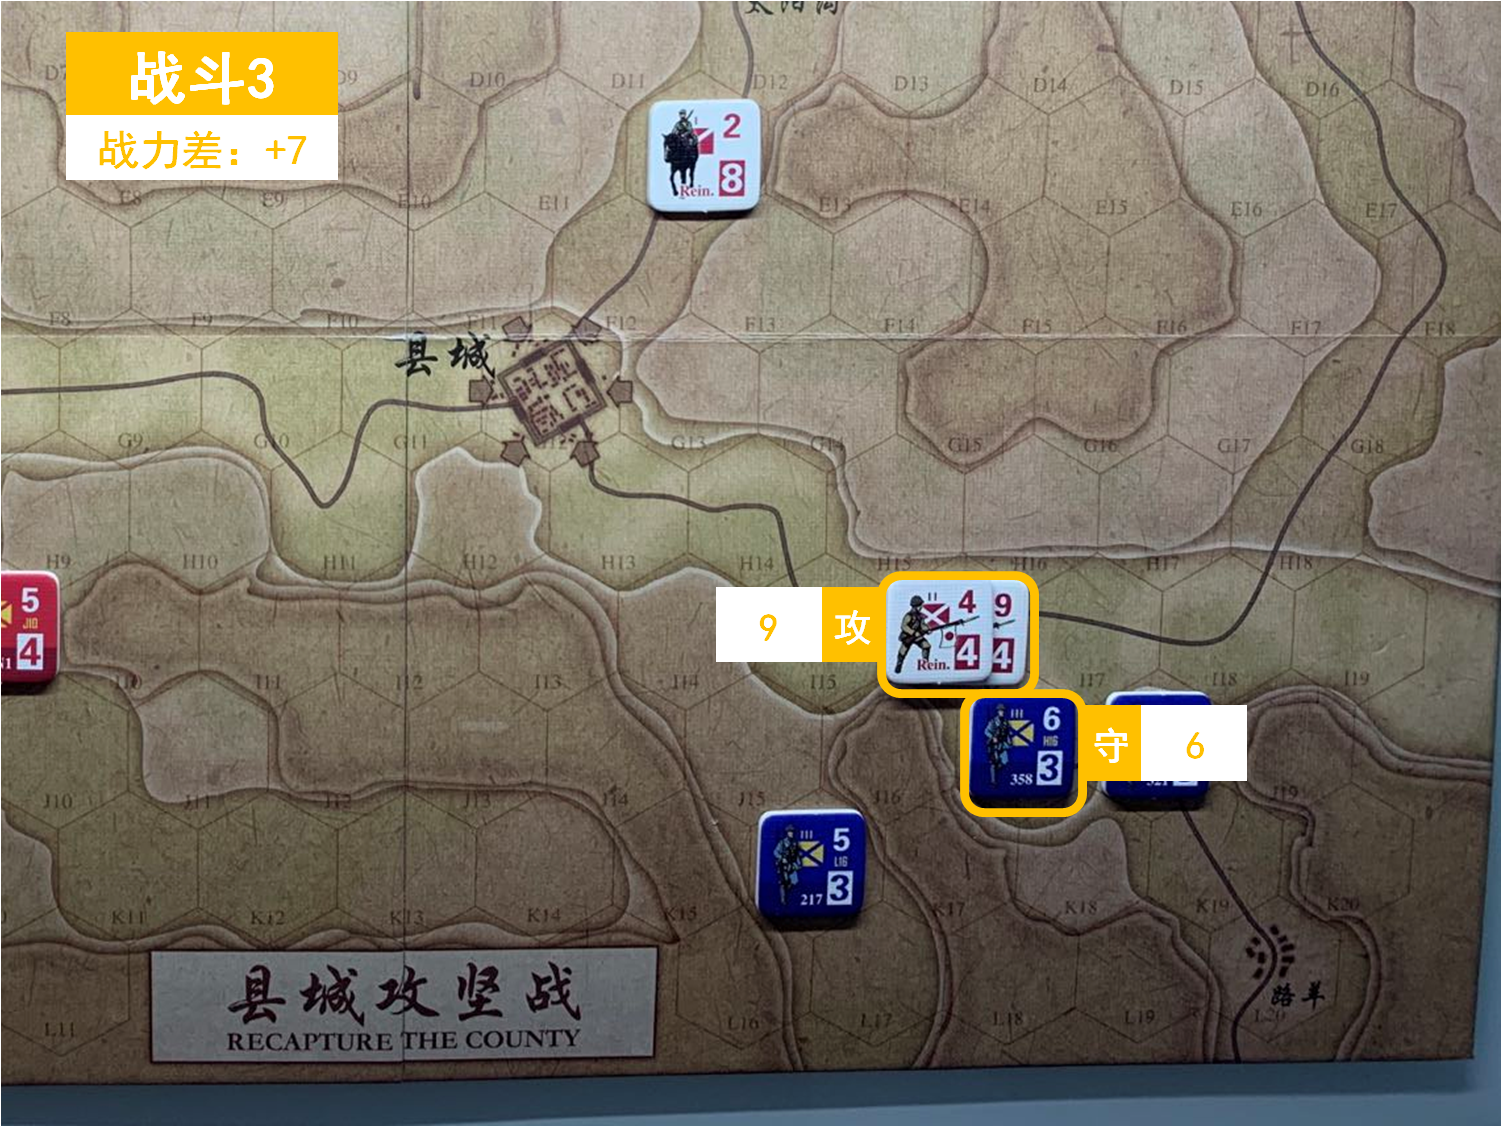 第三回合 日方战斗阶段 战斗3 战斗力差值